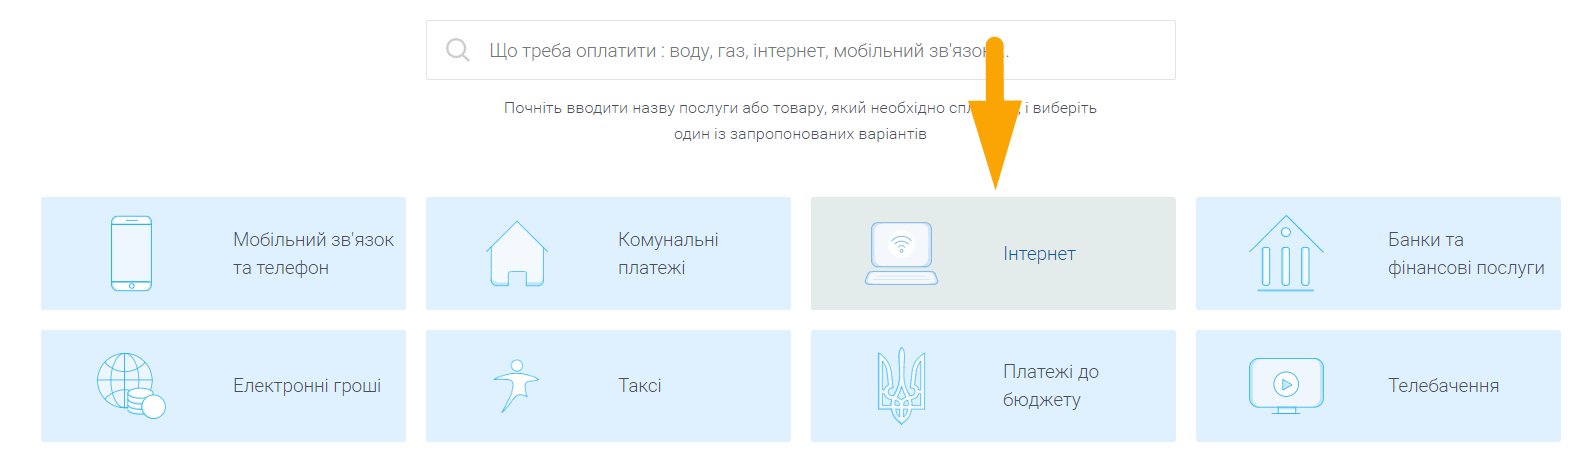 Як оплатити Київстар Інтернет - крок 2